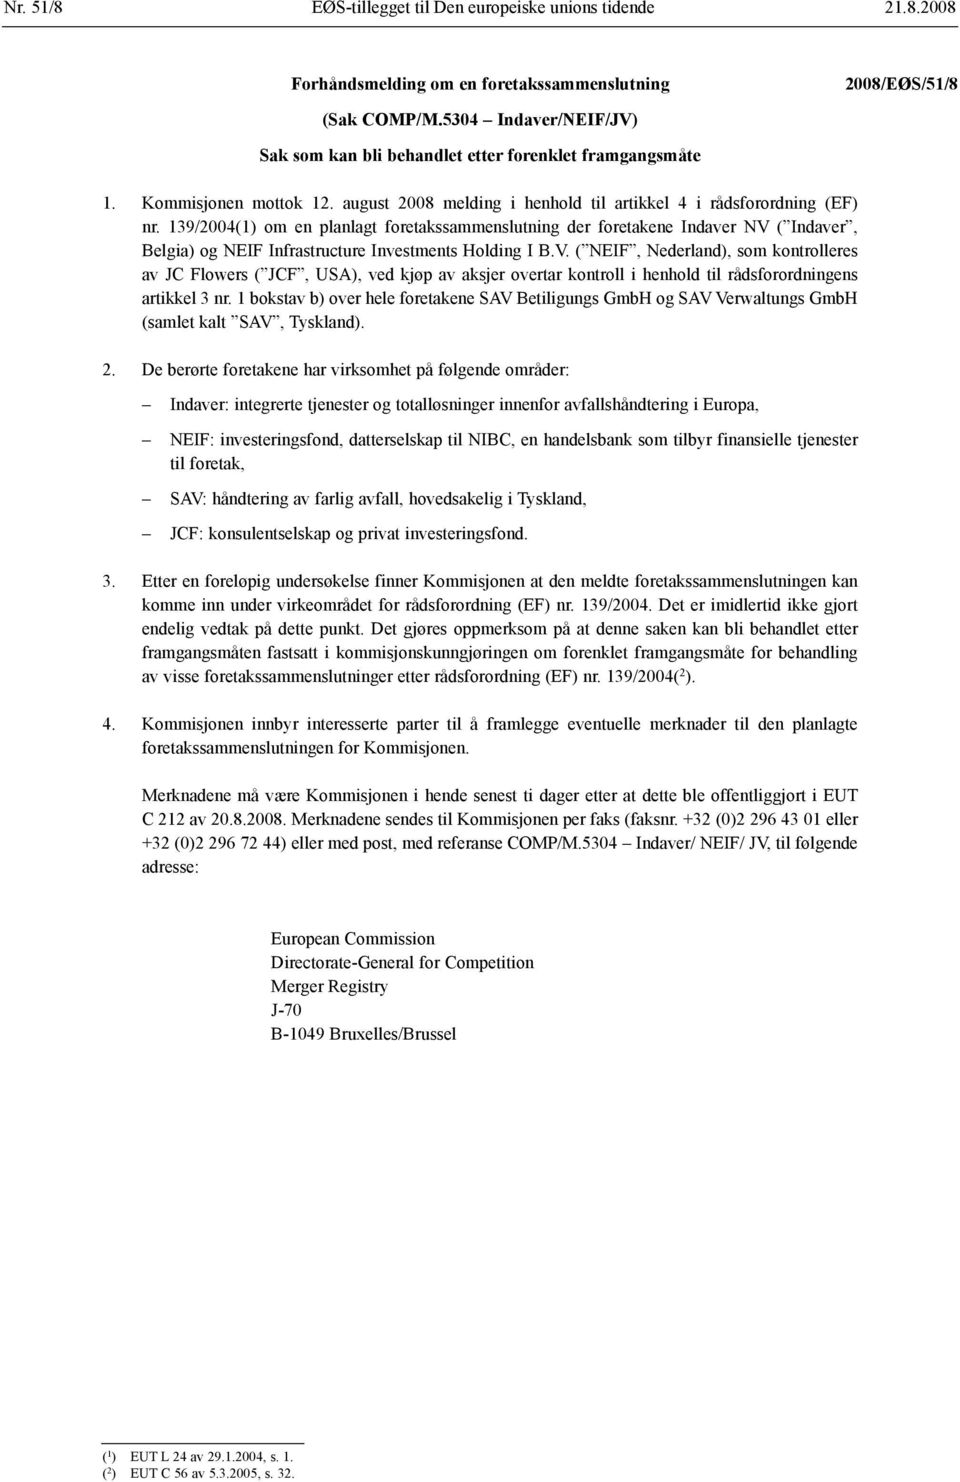 139/2004(1) om en planlagt foretaks sammenslutning der foretakene Indaver NV 